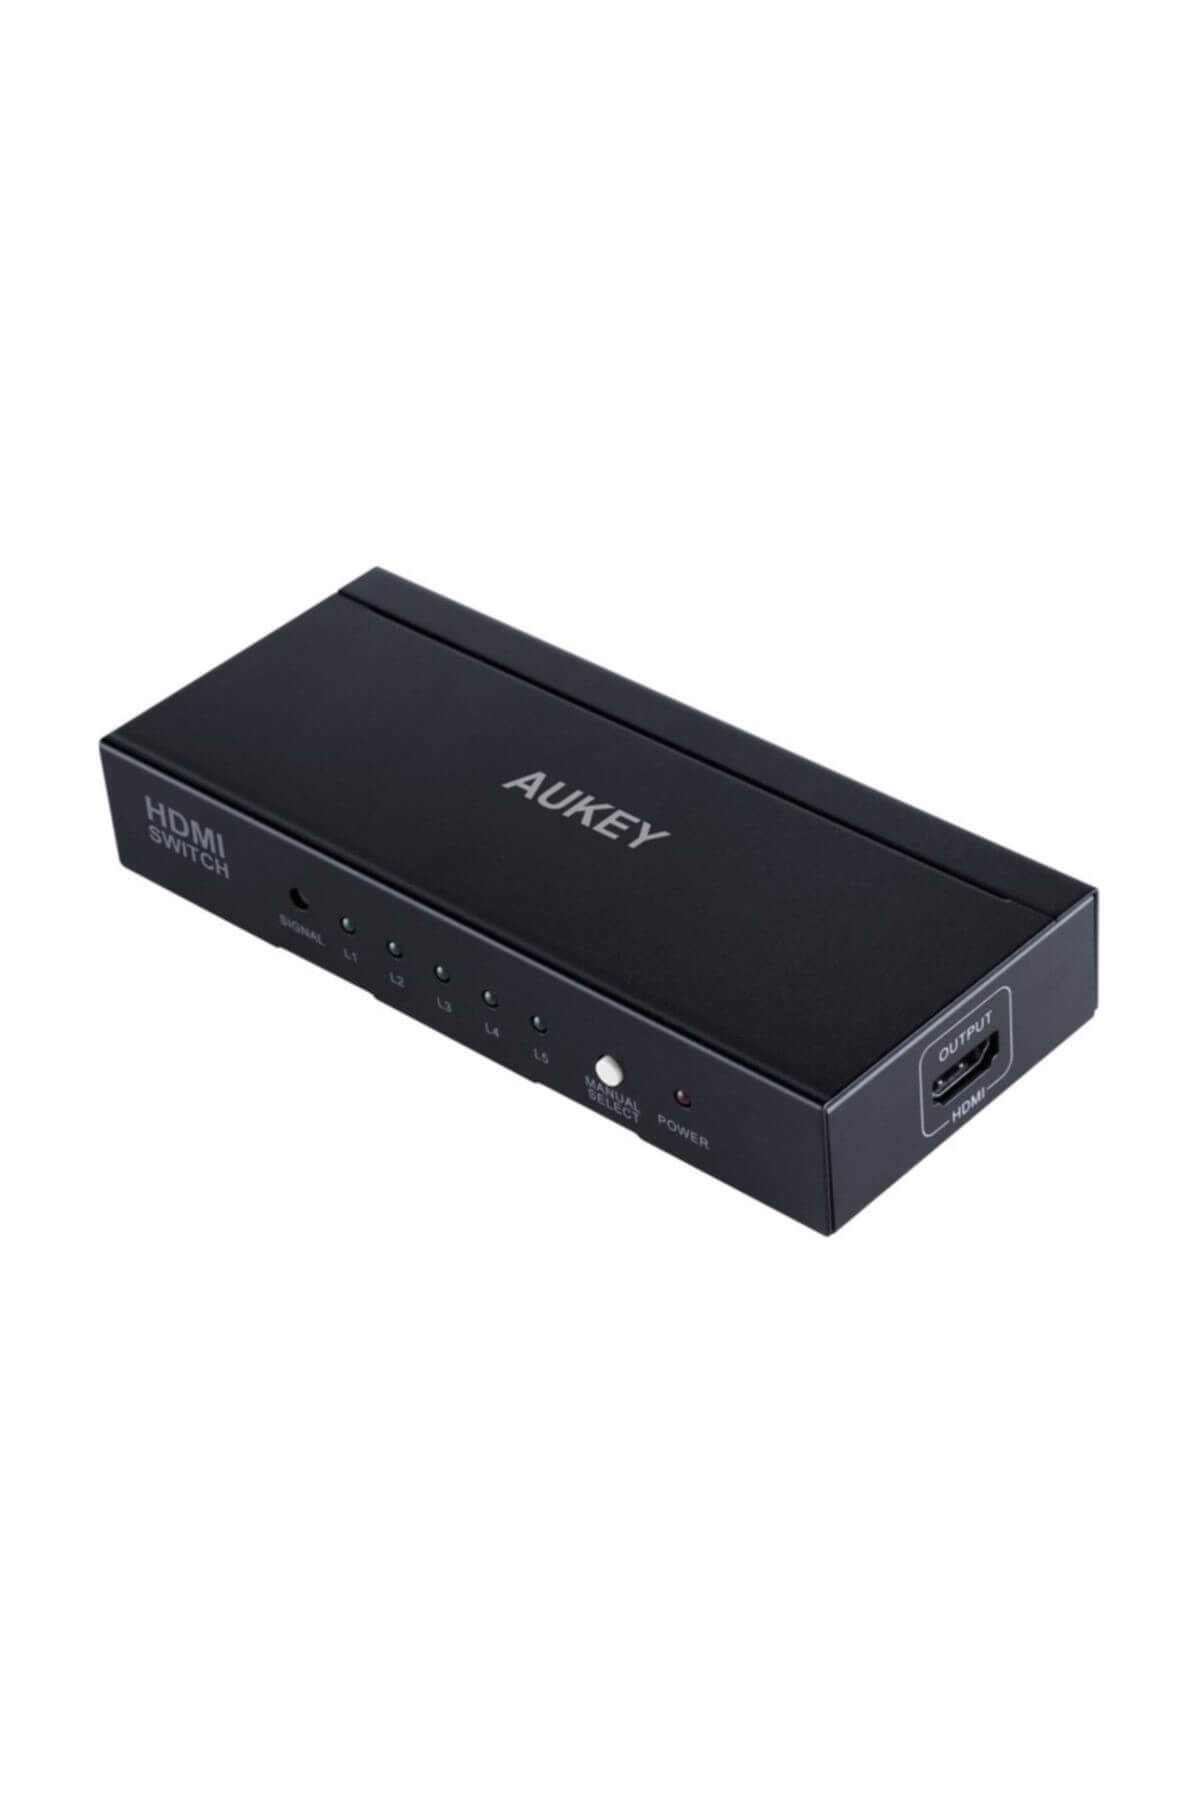 Aukey HA-H07 HDMI Switch 5 Giriş 1 Çıkış Metal HDTV için 4K ve 3D destek